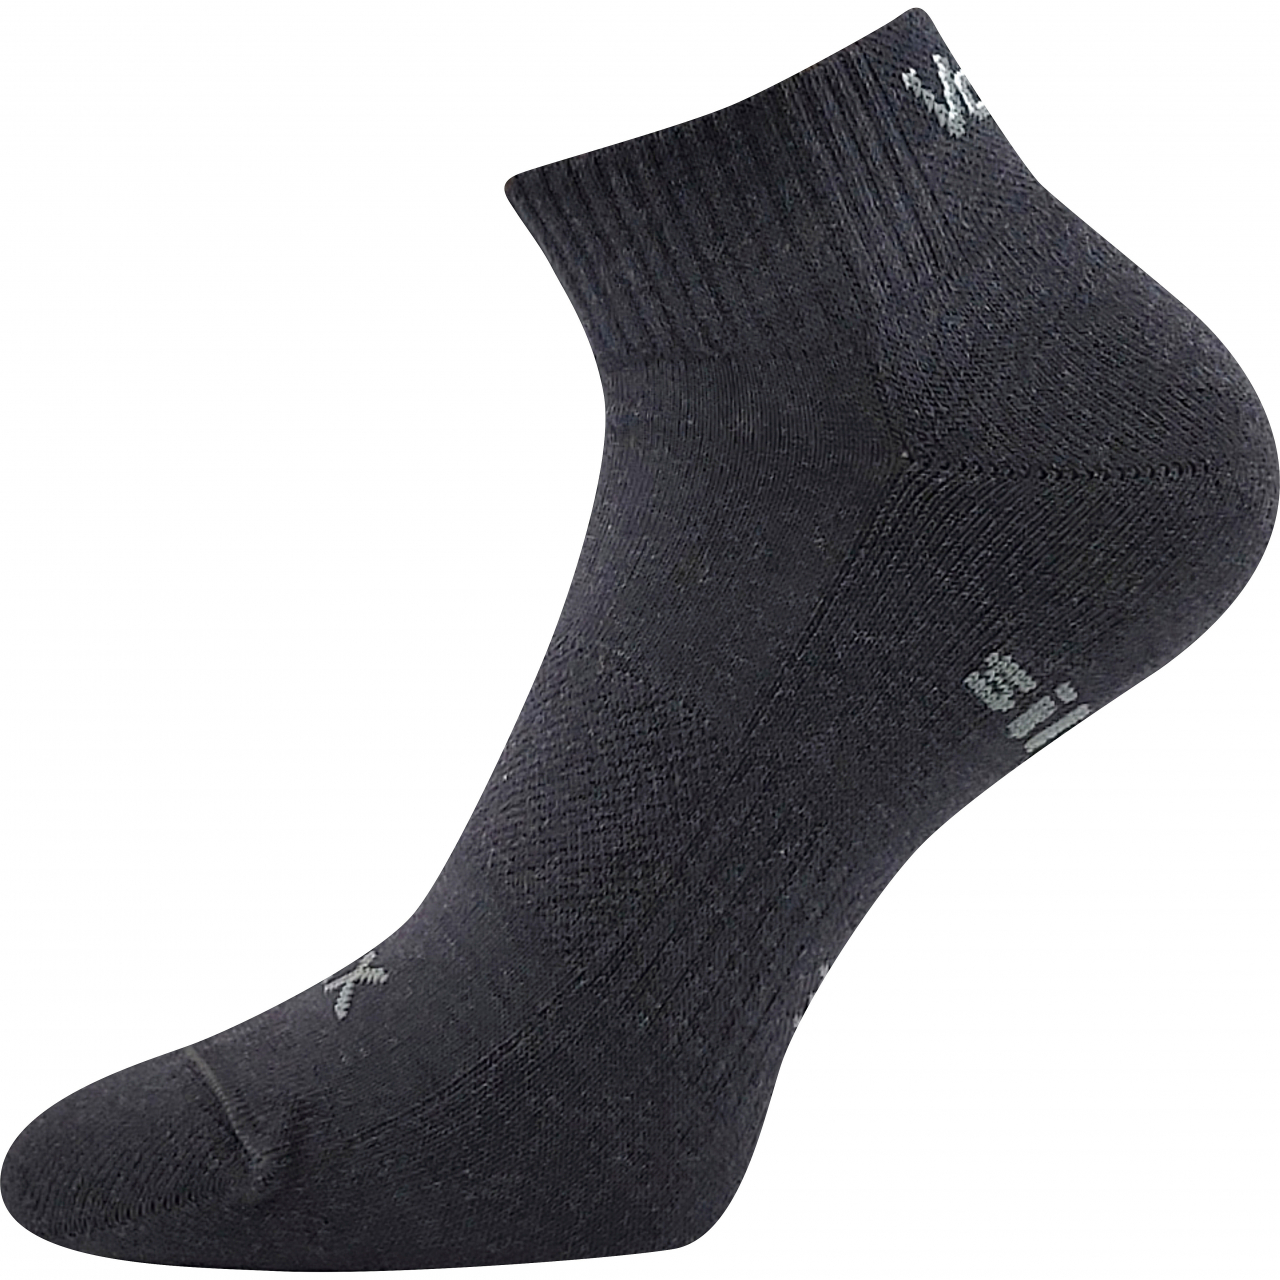 Ponožky unisex sportovní Voxx Legan - tmavě šedé, 39-42